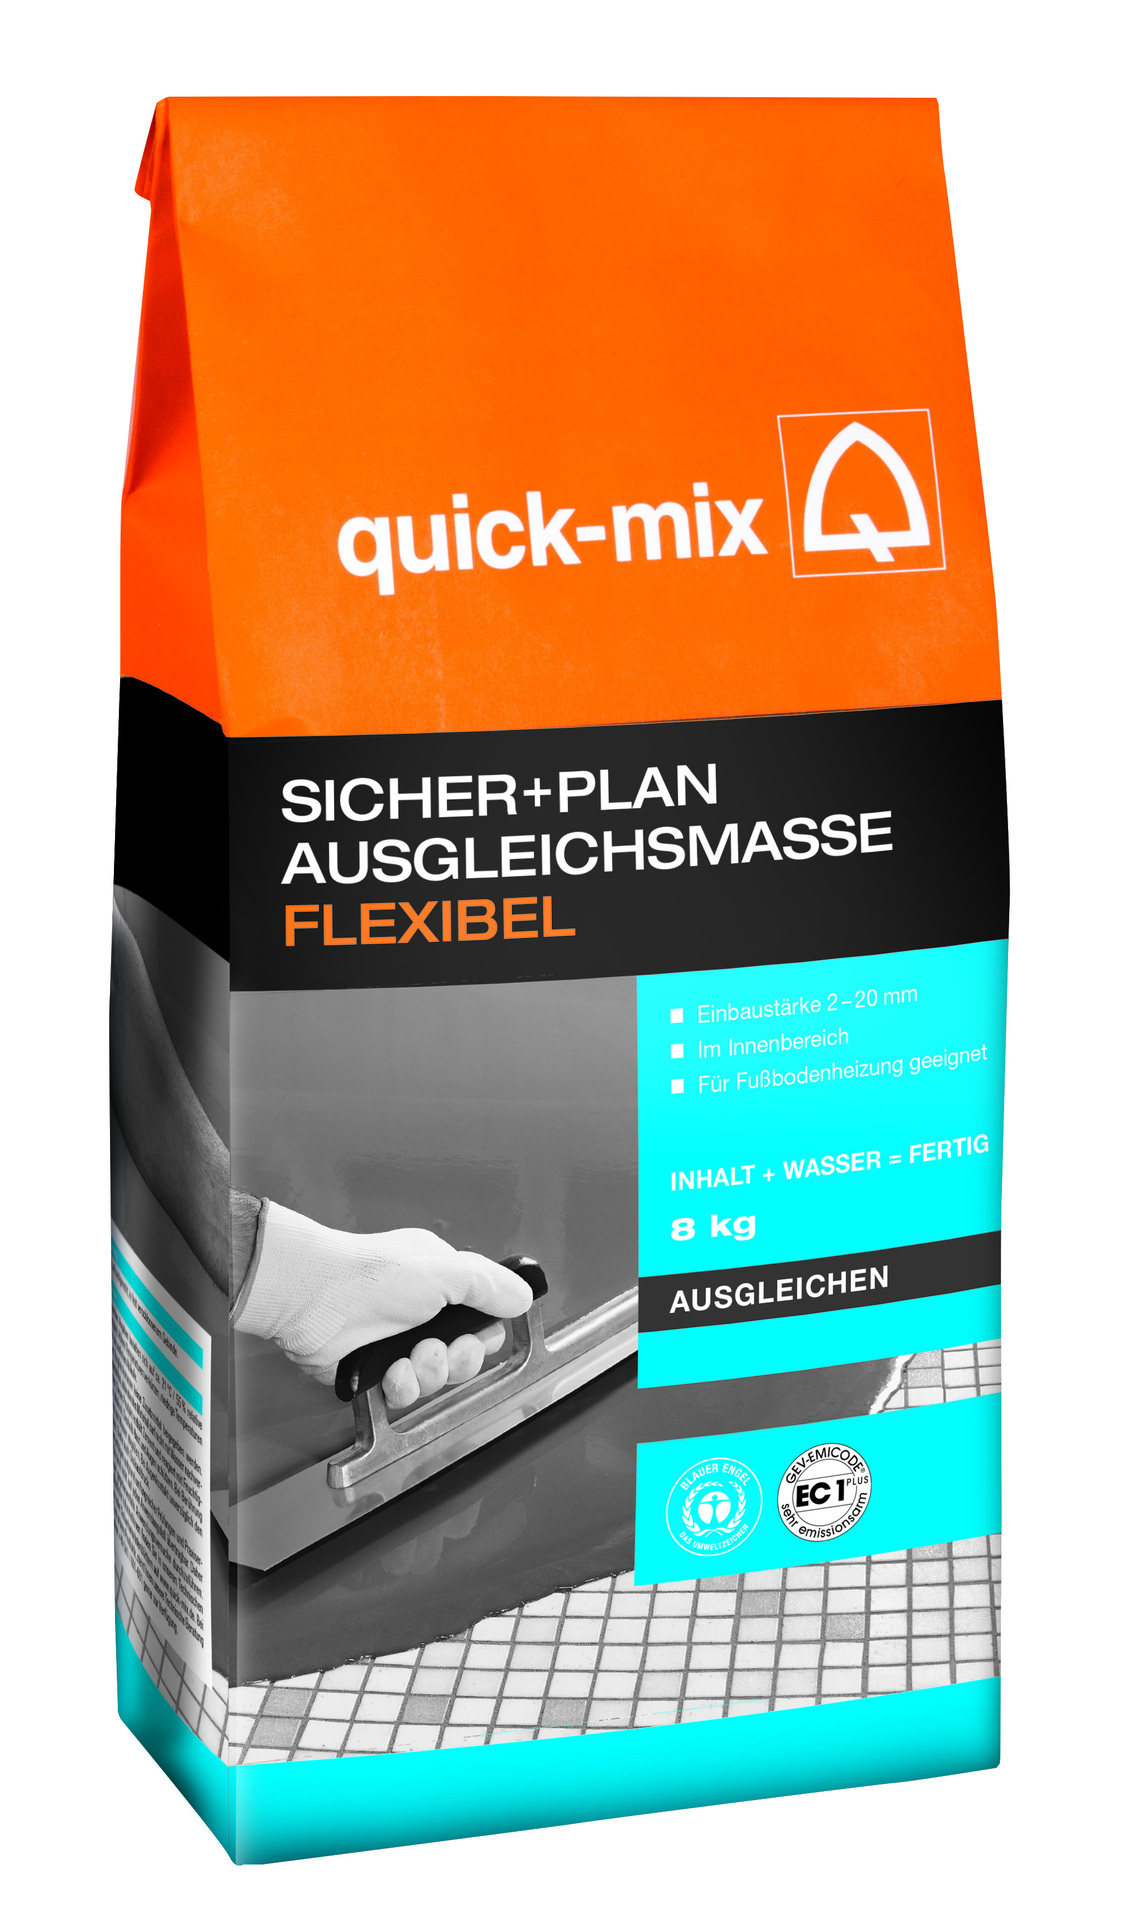 Sicher+Plan Ausgleichsmasse Flexibel 2-20mm